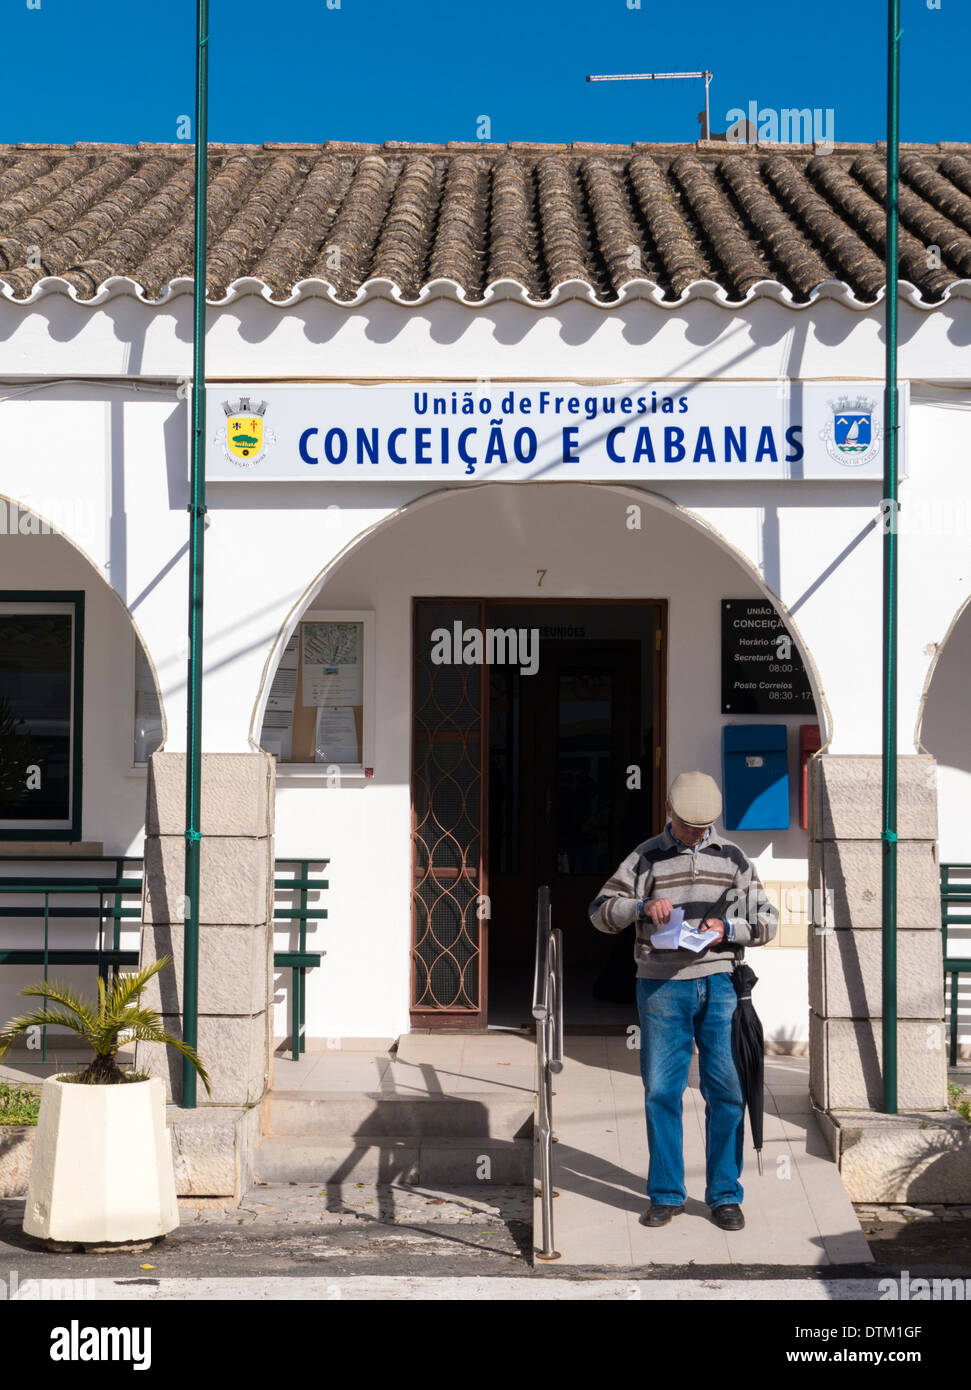 Freguesia de Conceicao e Cabanas, Rua 25 Abril, Conceicao de Tavira, Algarve, Portugal, February 2014 Stock Photo